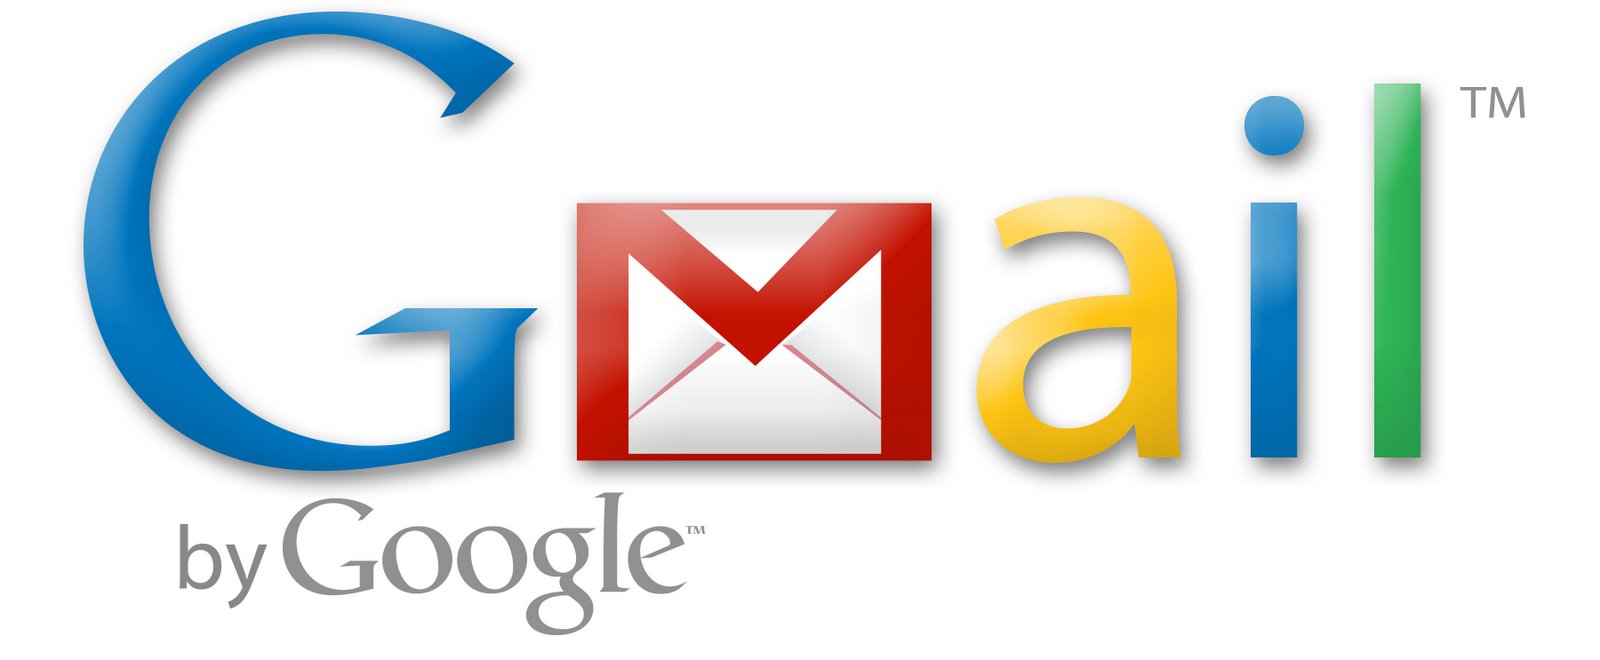 Gmail logo - Wordpress cho IOS, quản lý site và blog wordpress trên Idevice